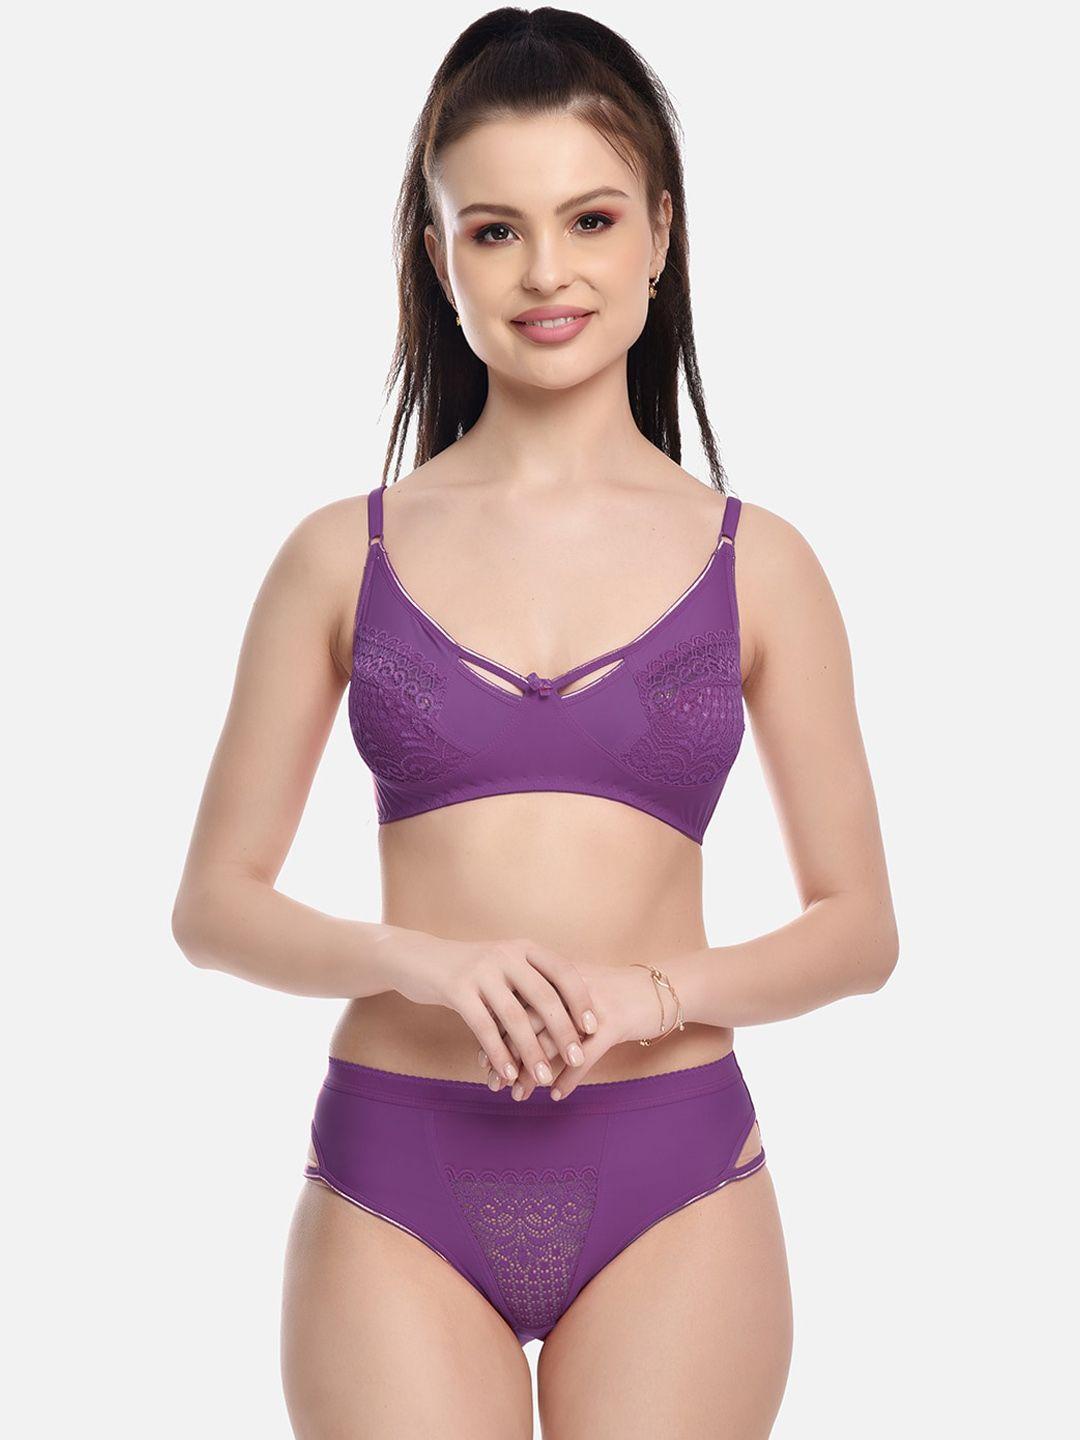 fims patterned  lingerie set new_karina_set_purple_b